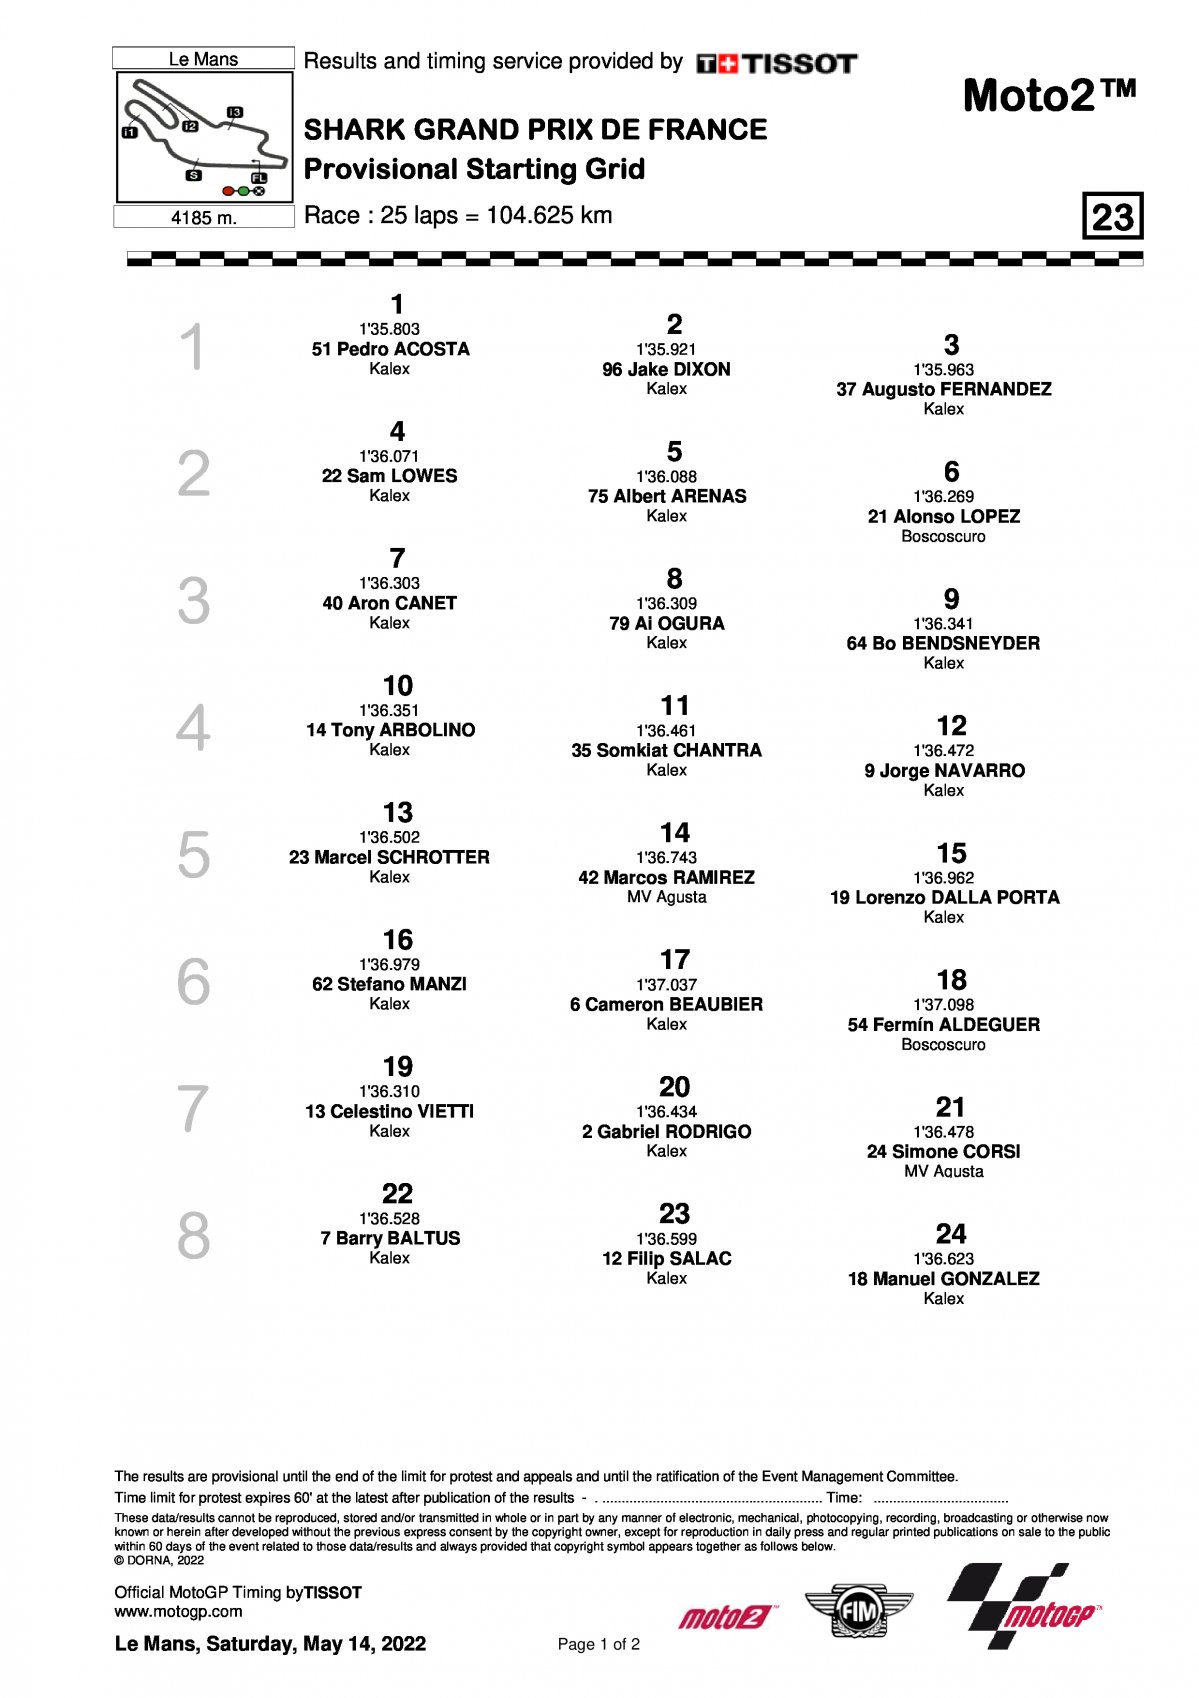 Стартовая решетка Гран-При Франции, Moto2 (15/05/2022)